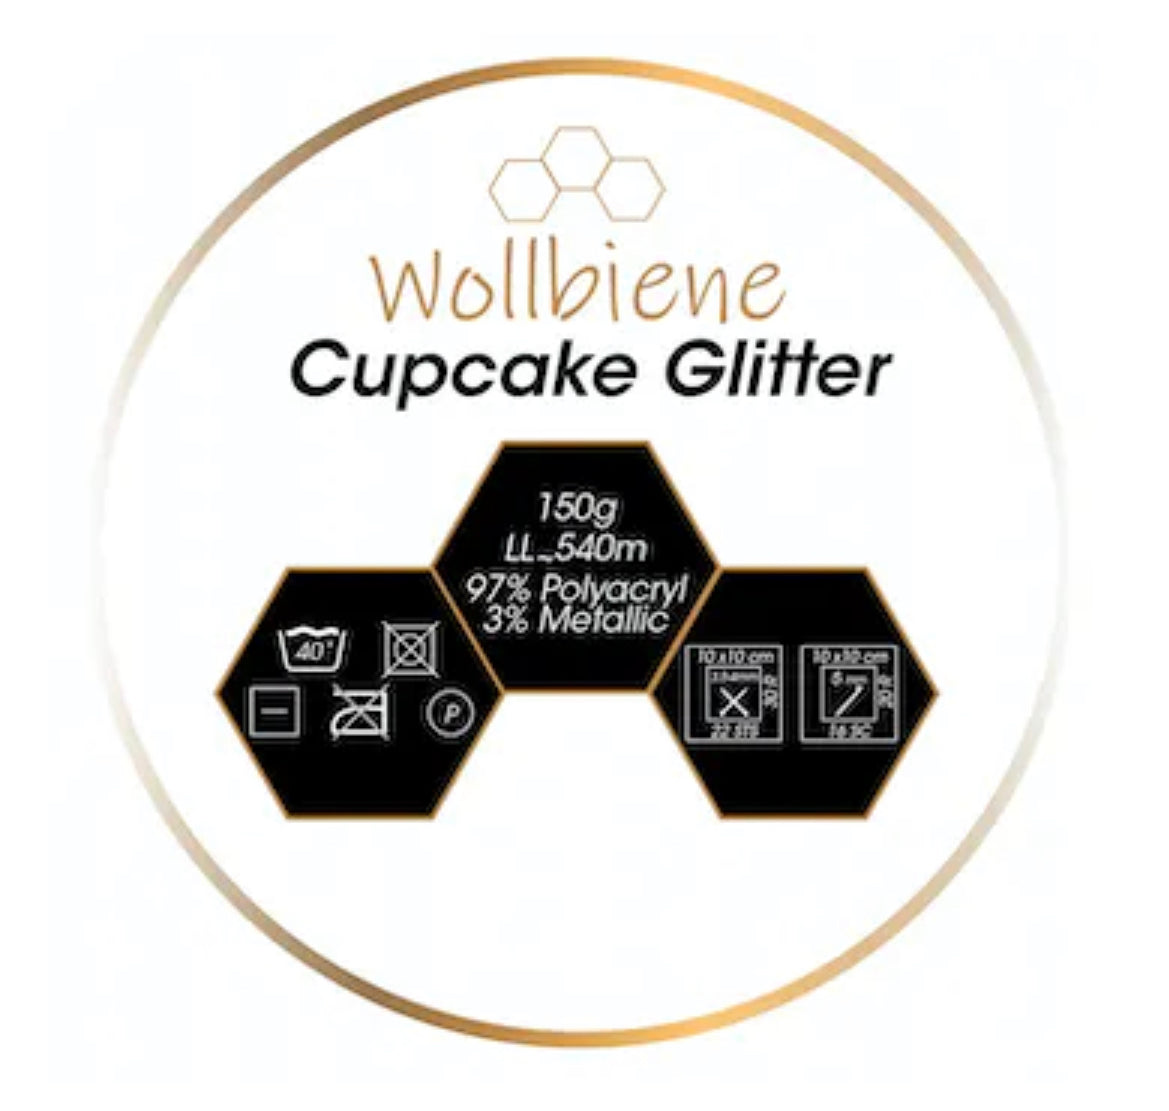 Wollbiene Cupcake Glitter Double Knitting 3040